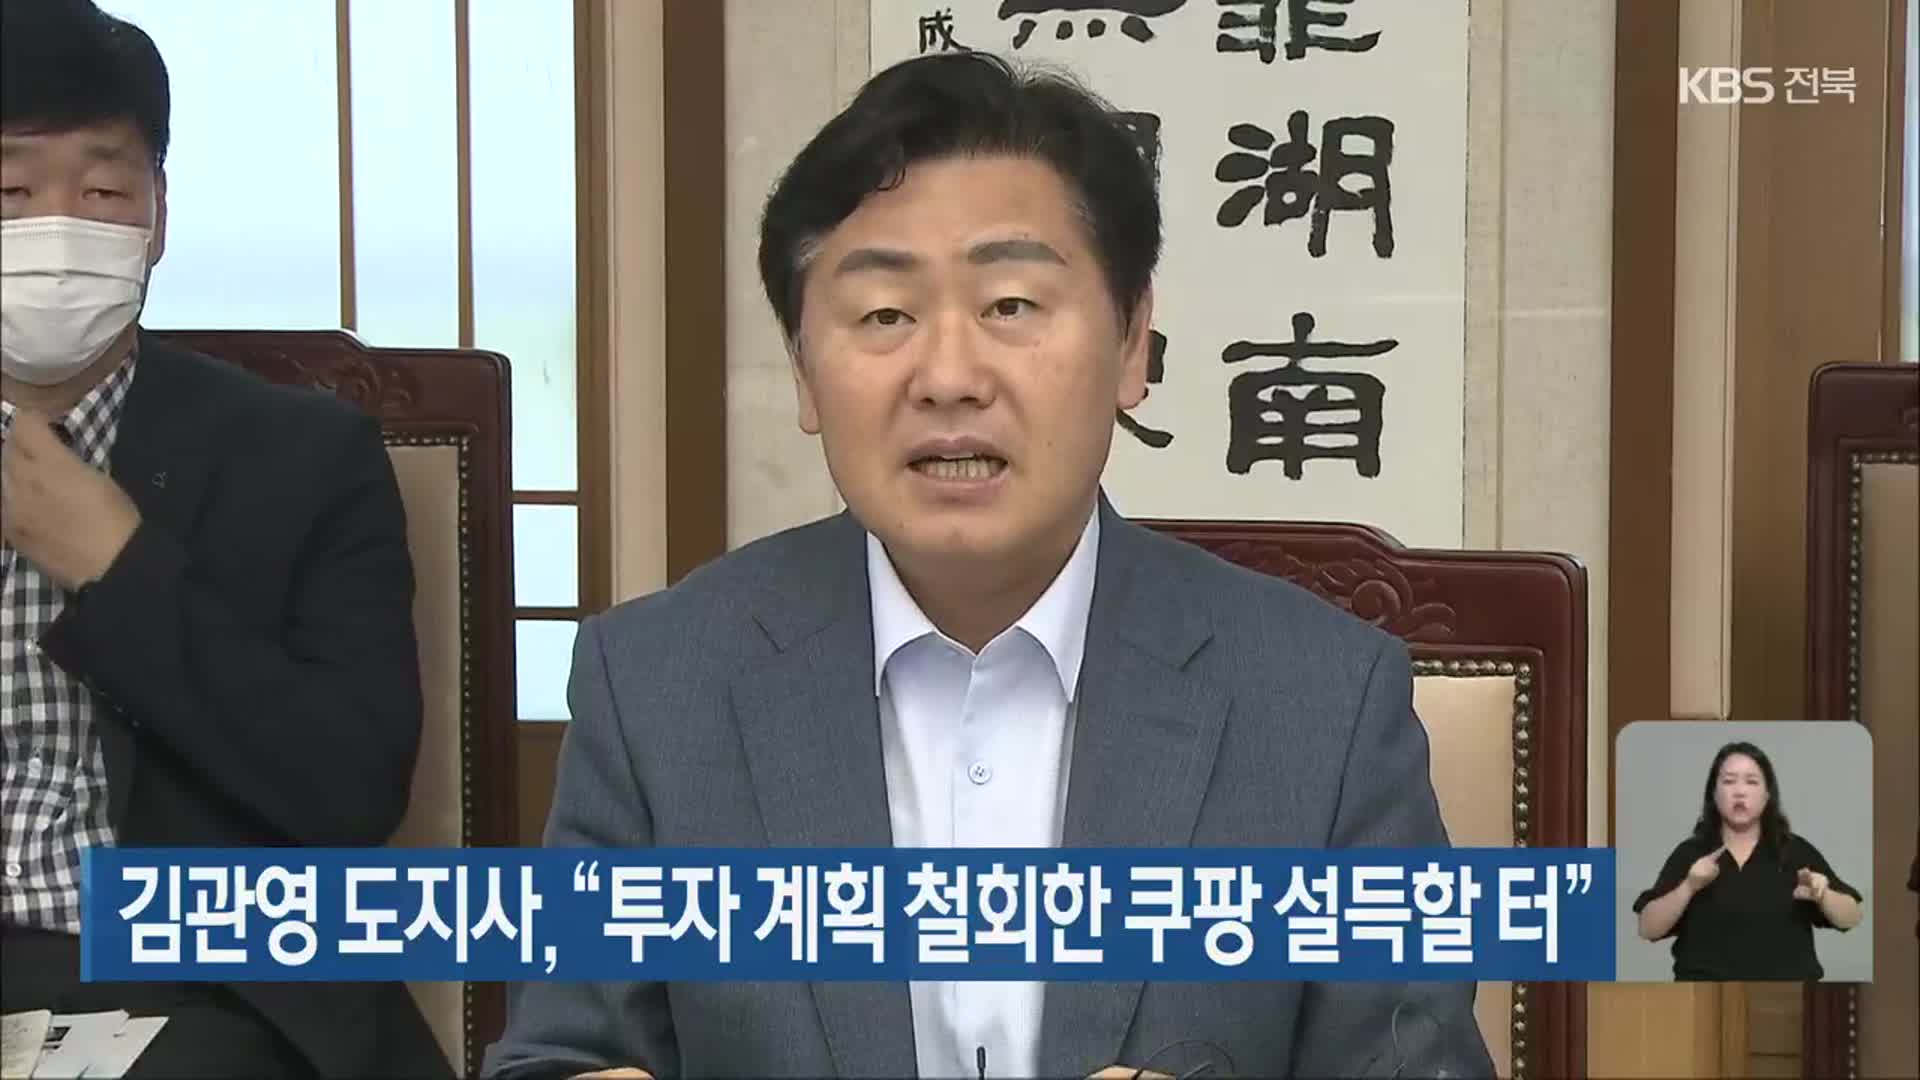 김관영 도지사, “투자 계획 철회한 쿠팡 설득할 터”